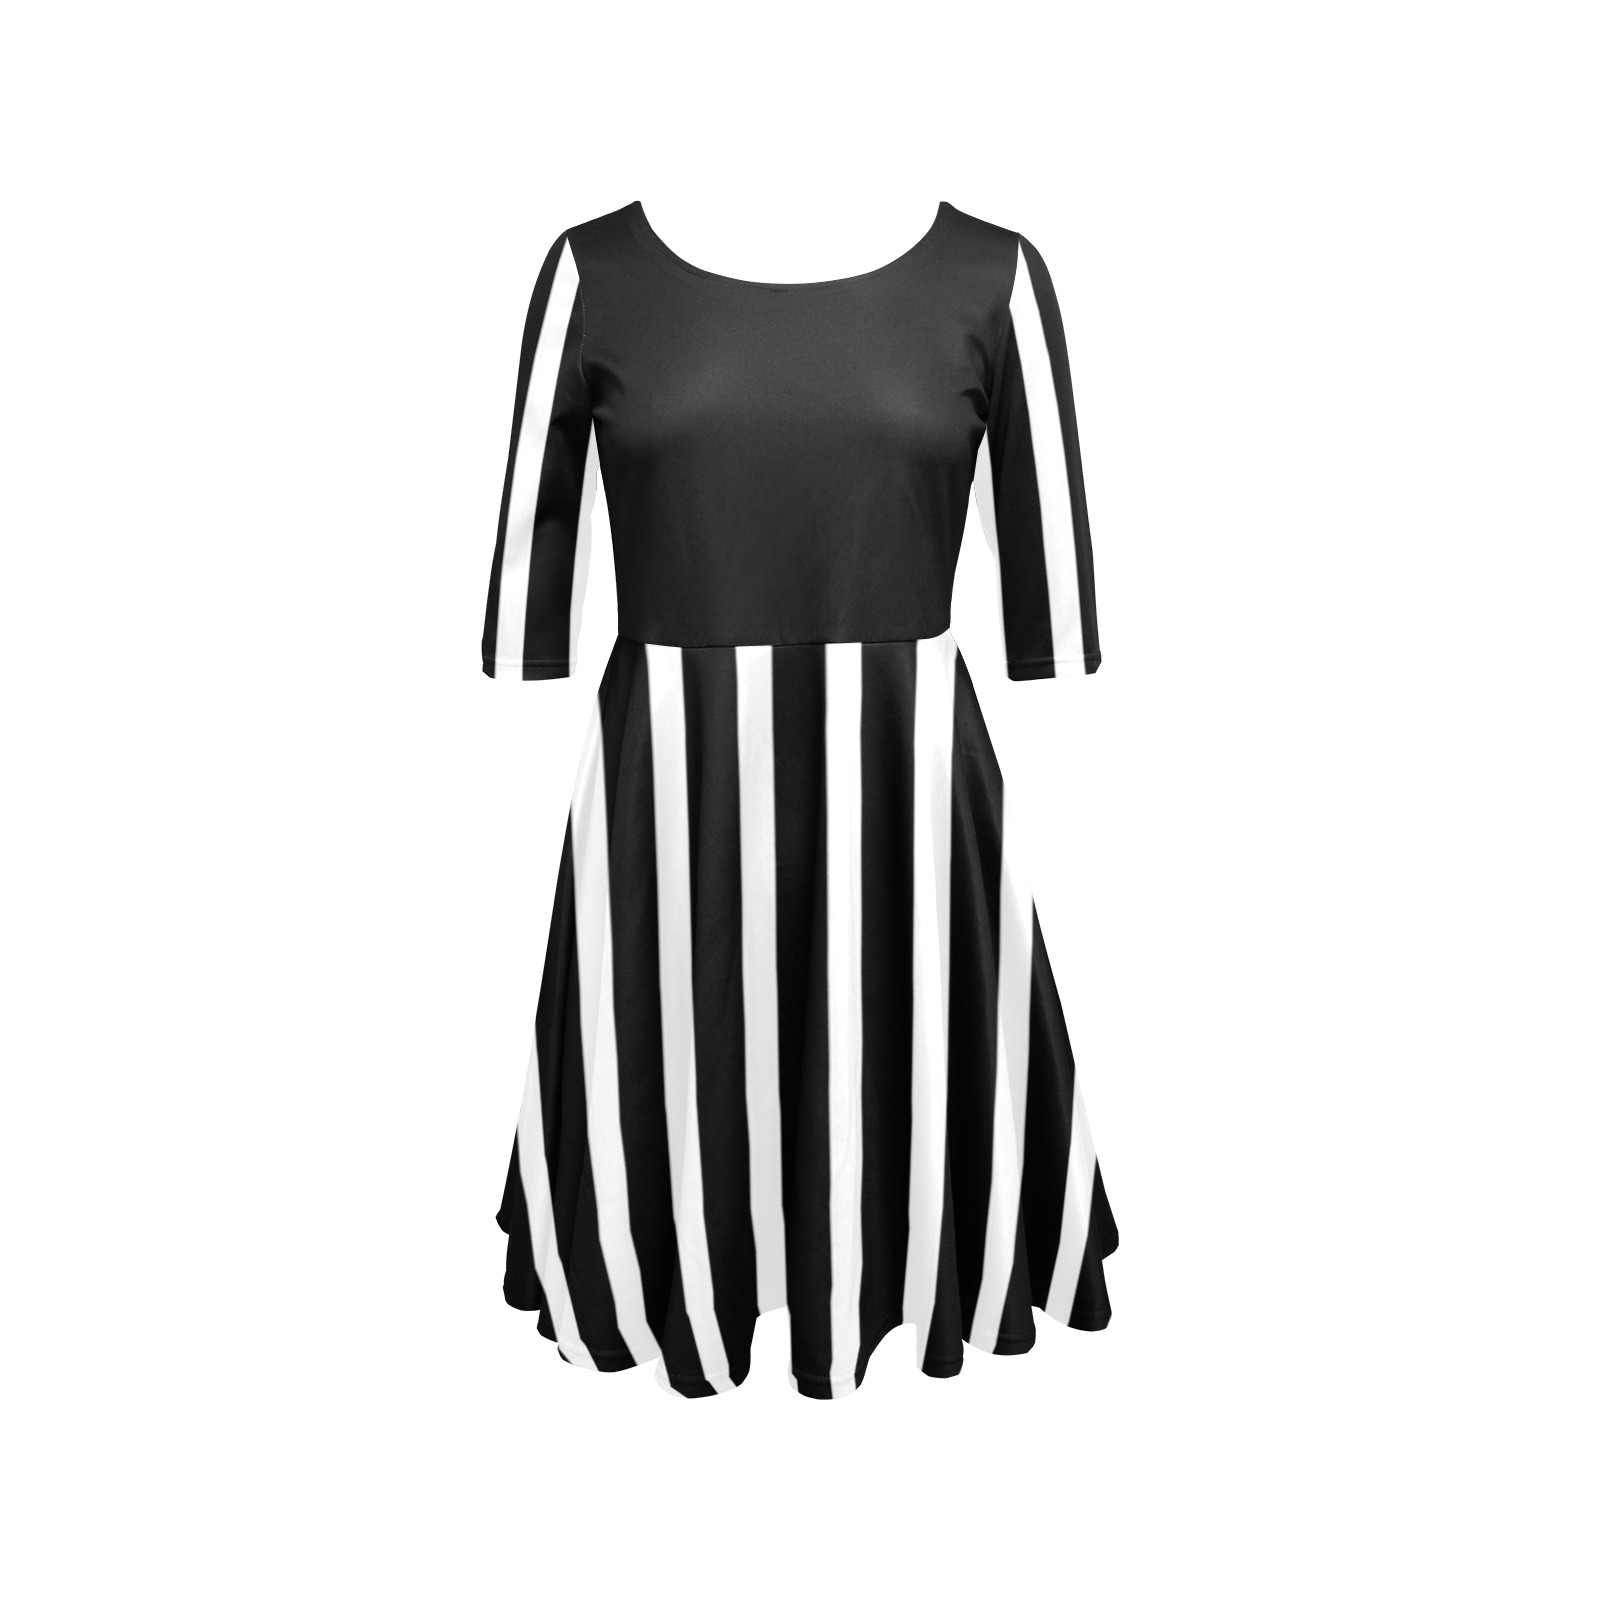 Black and White Stripes Pattern Half Sleeve Skater Dress (Model D61)